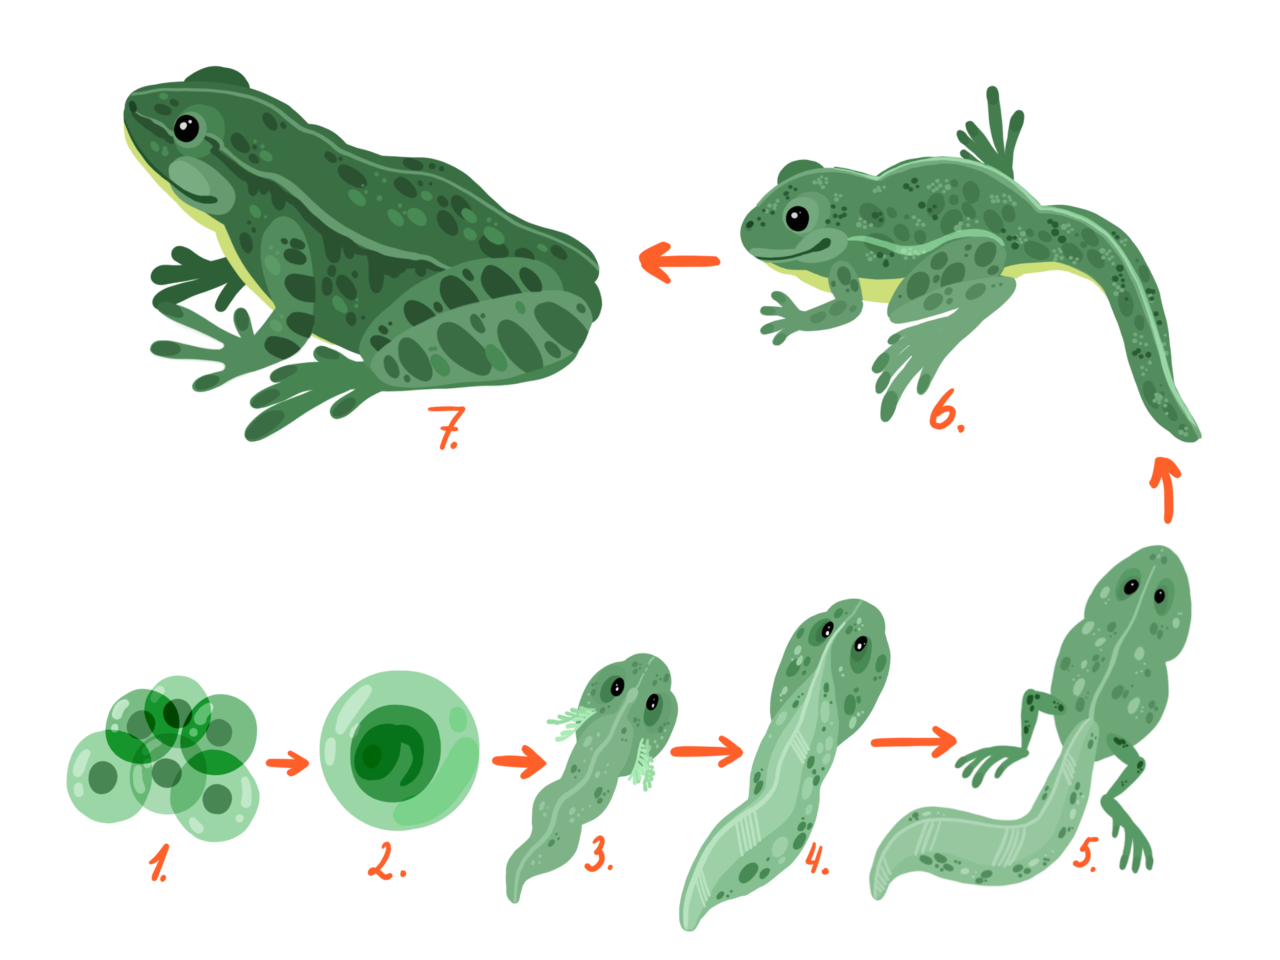 Строение и развитие земноводных. Метаморфозы головастика лягушки. Стадии развития головастика лягушки. Эволюция головастика в лягушку. Схема стадии развития головастиков лягушек.